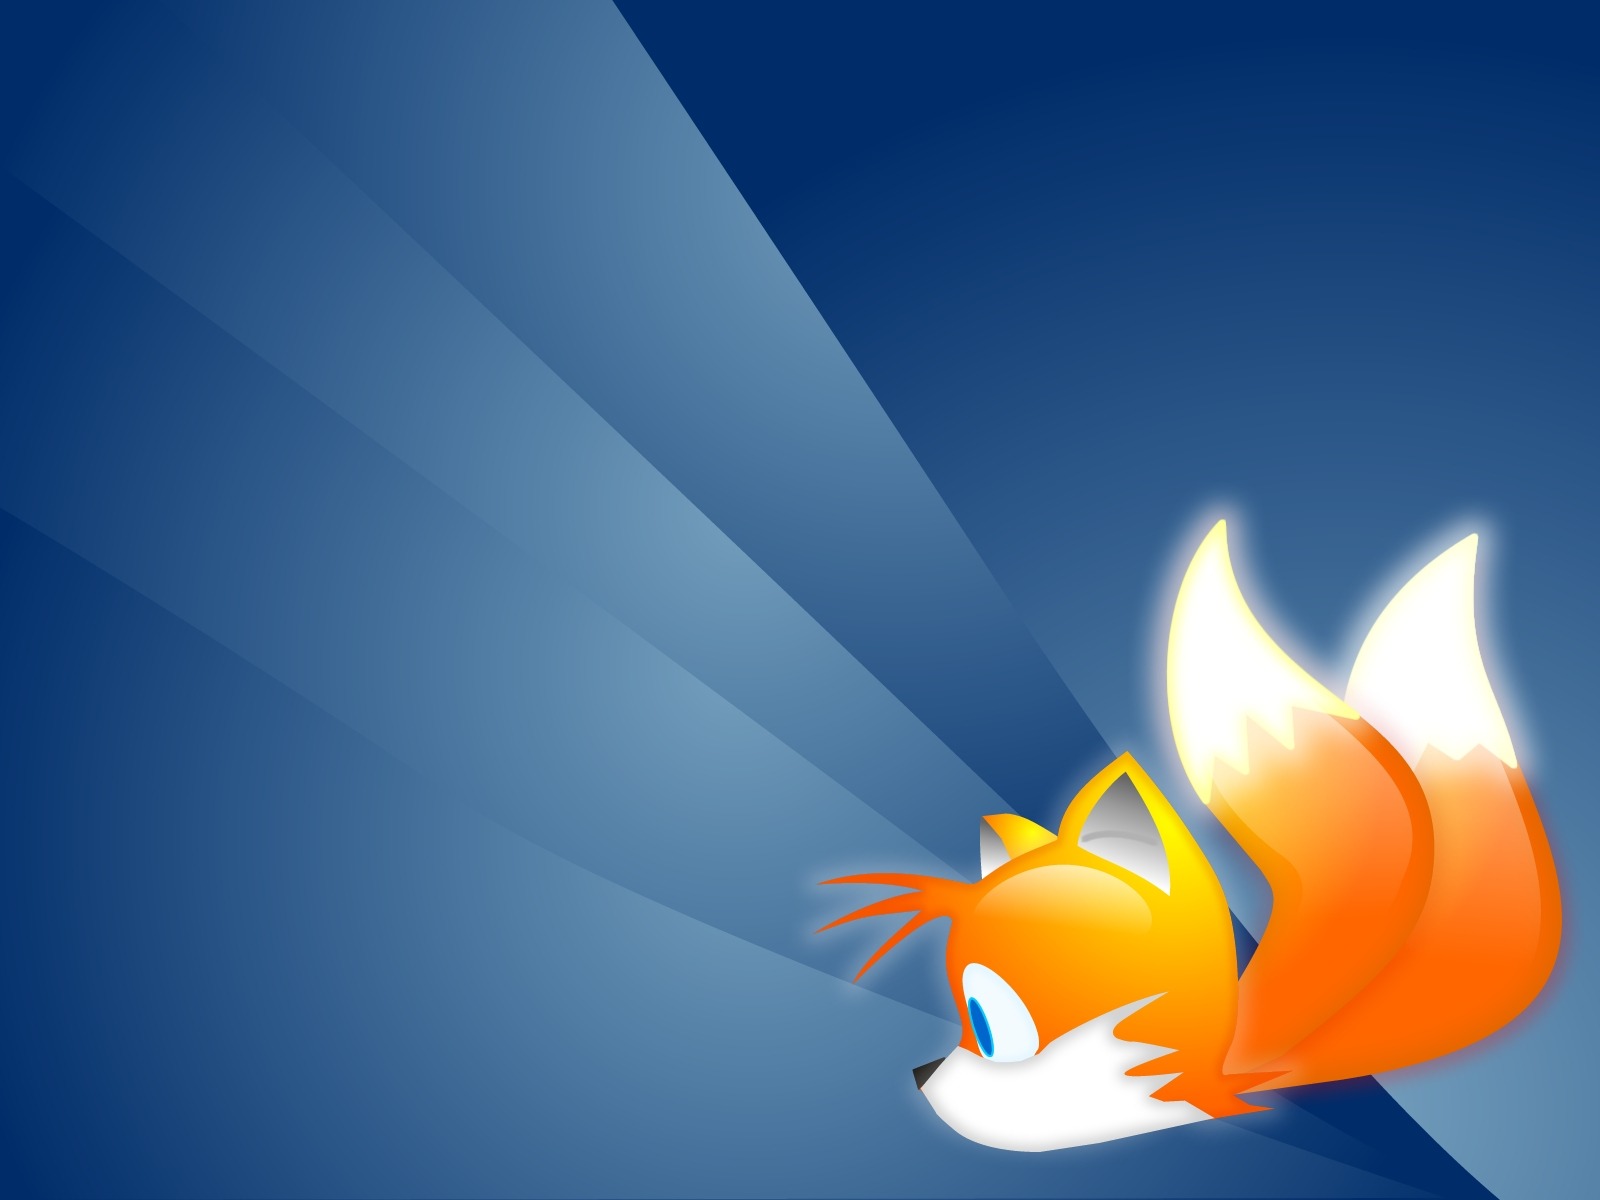 壁纸1600x1200Firefox火狐2006系列精美壁纸 壁纸10壁纸 Firefox火狐2壁纸 Firefox火狐2图片 Firefox火狐2素材 系统壁纸 系统图库 系统图片素材桌面壁纸